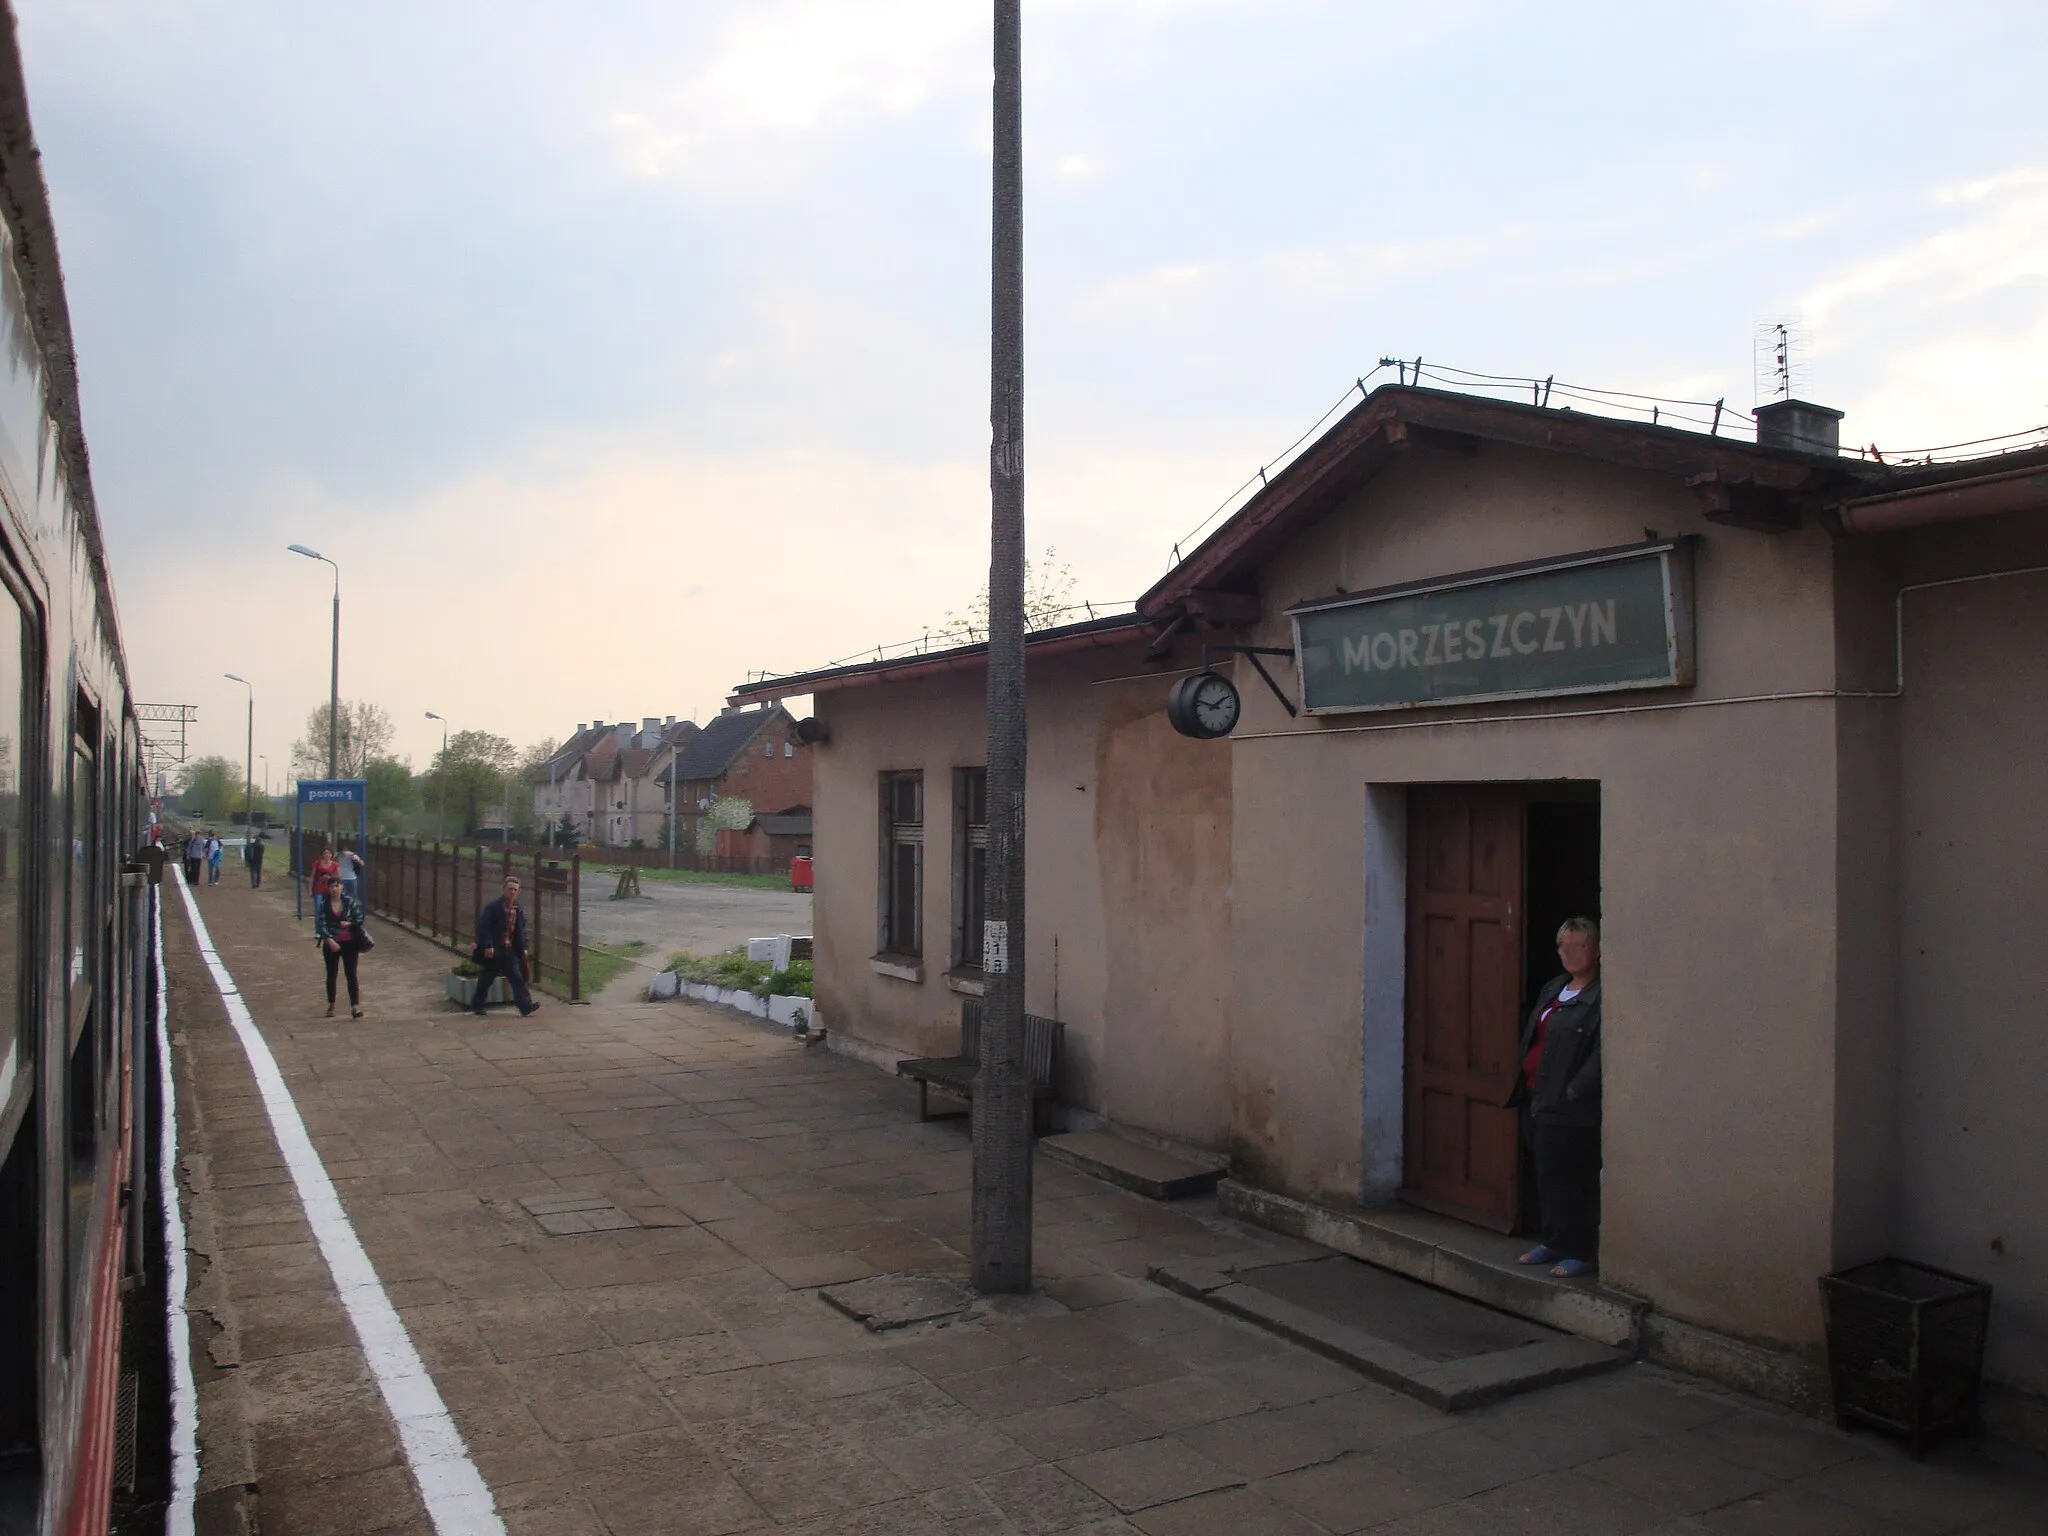 Photo showing: Train station in Morzeszczyn, Poland